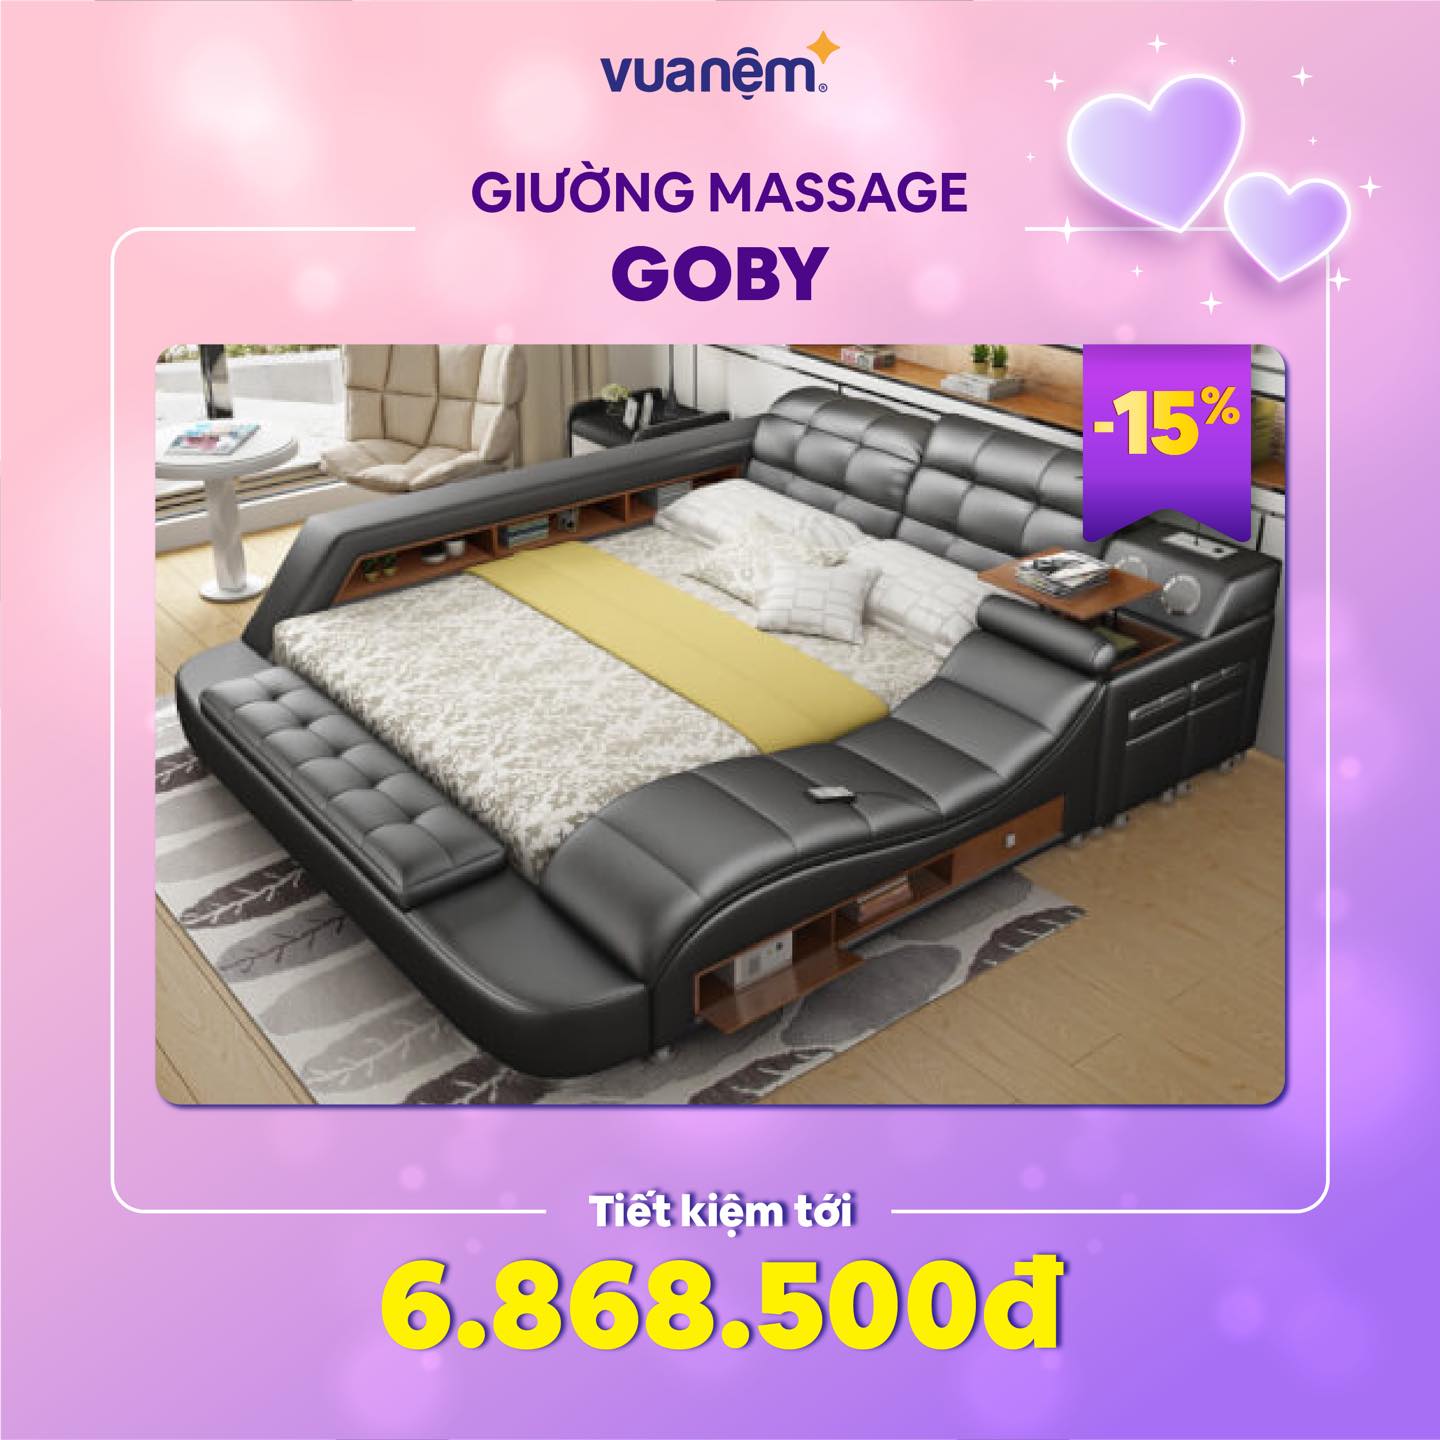 Giường massage Goby